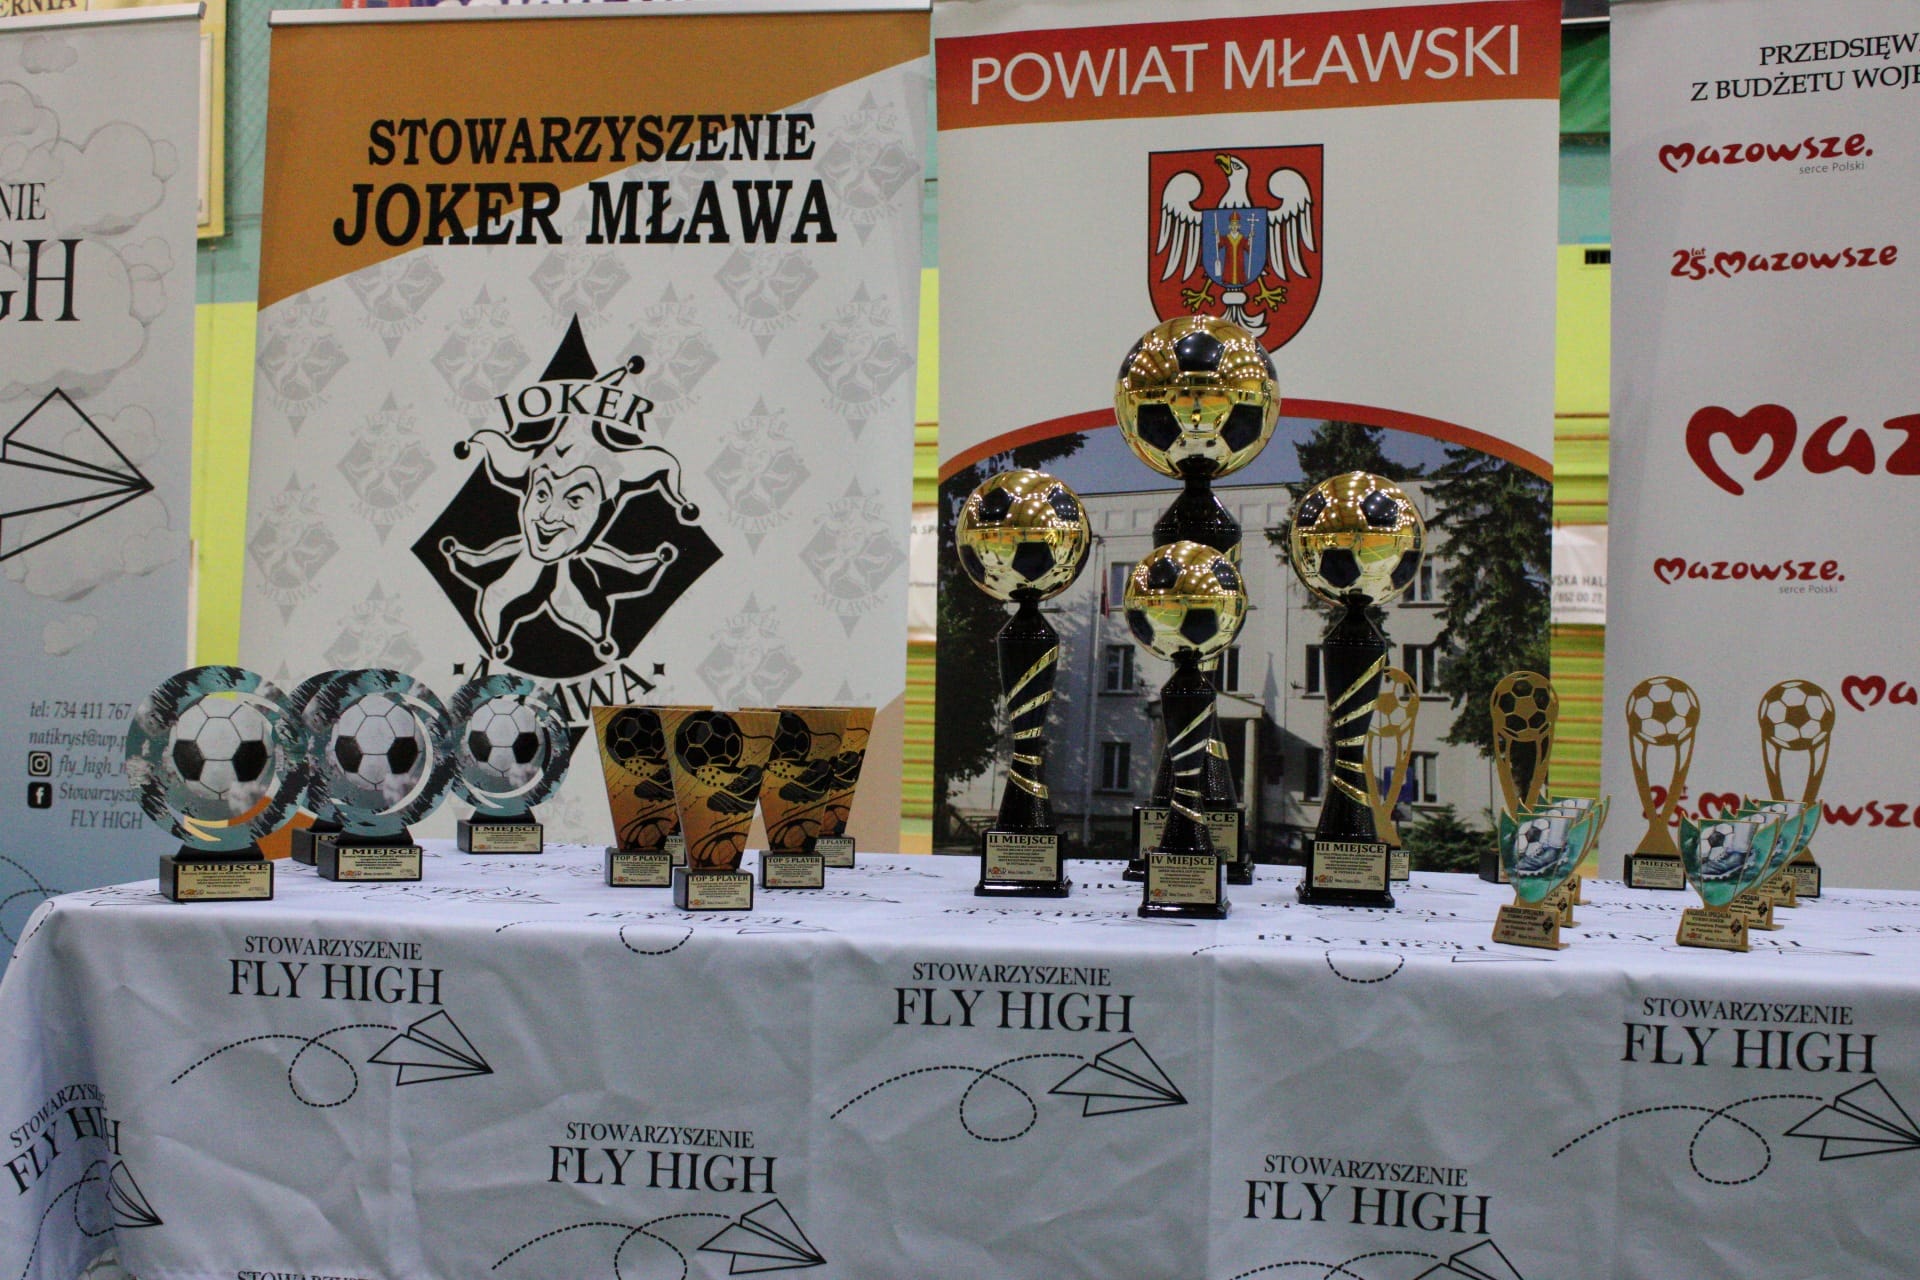 Joker Mława Cup